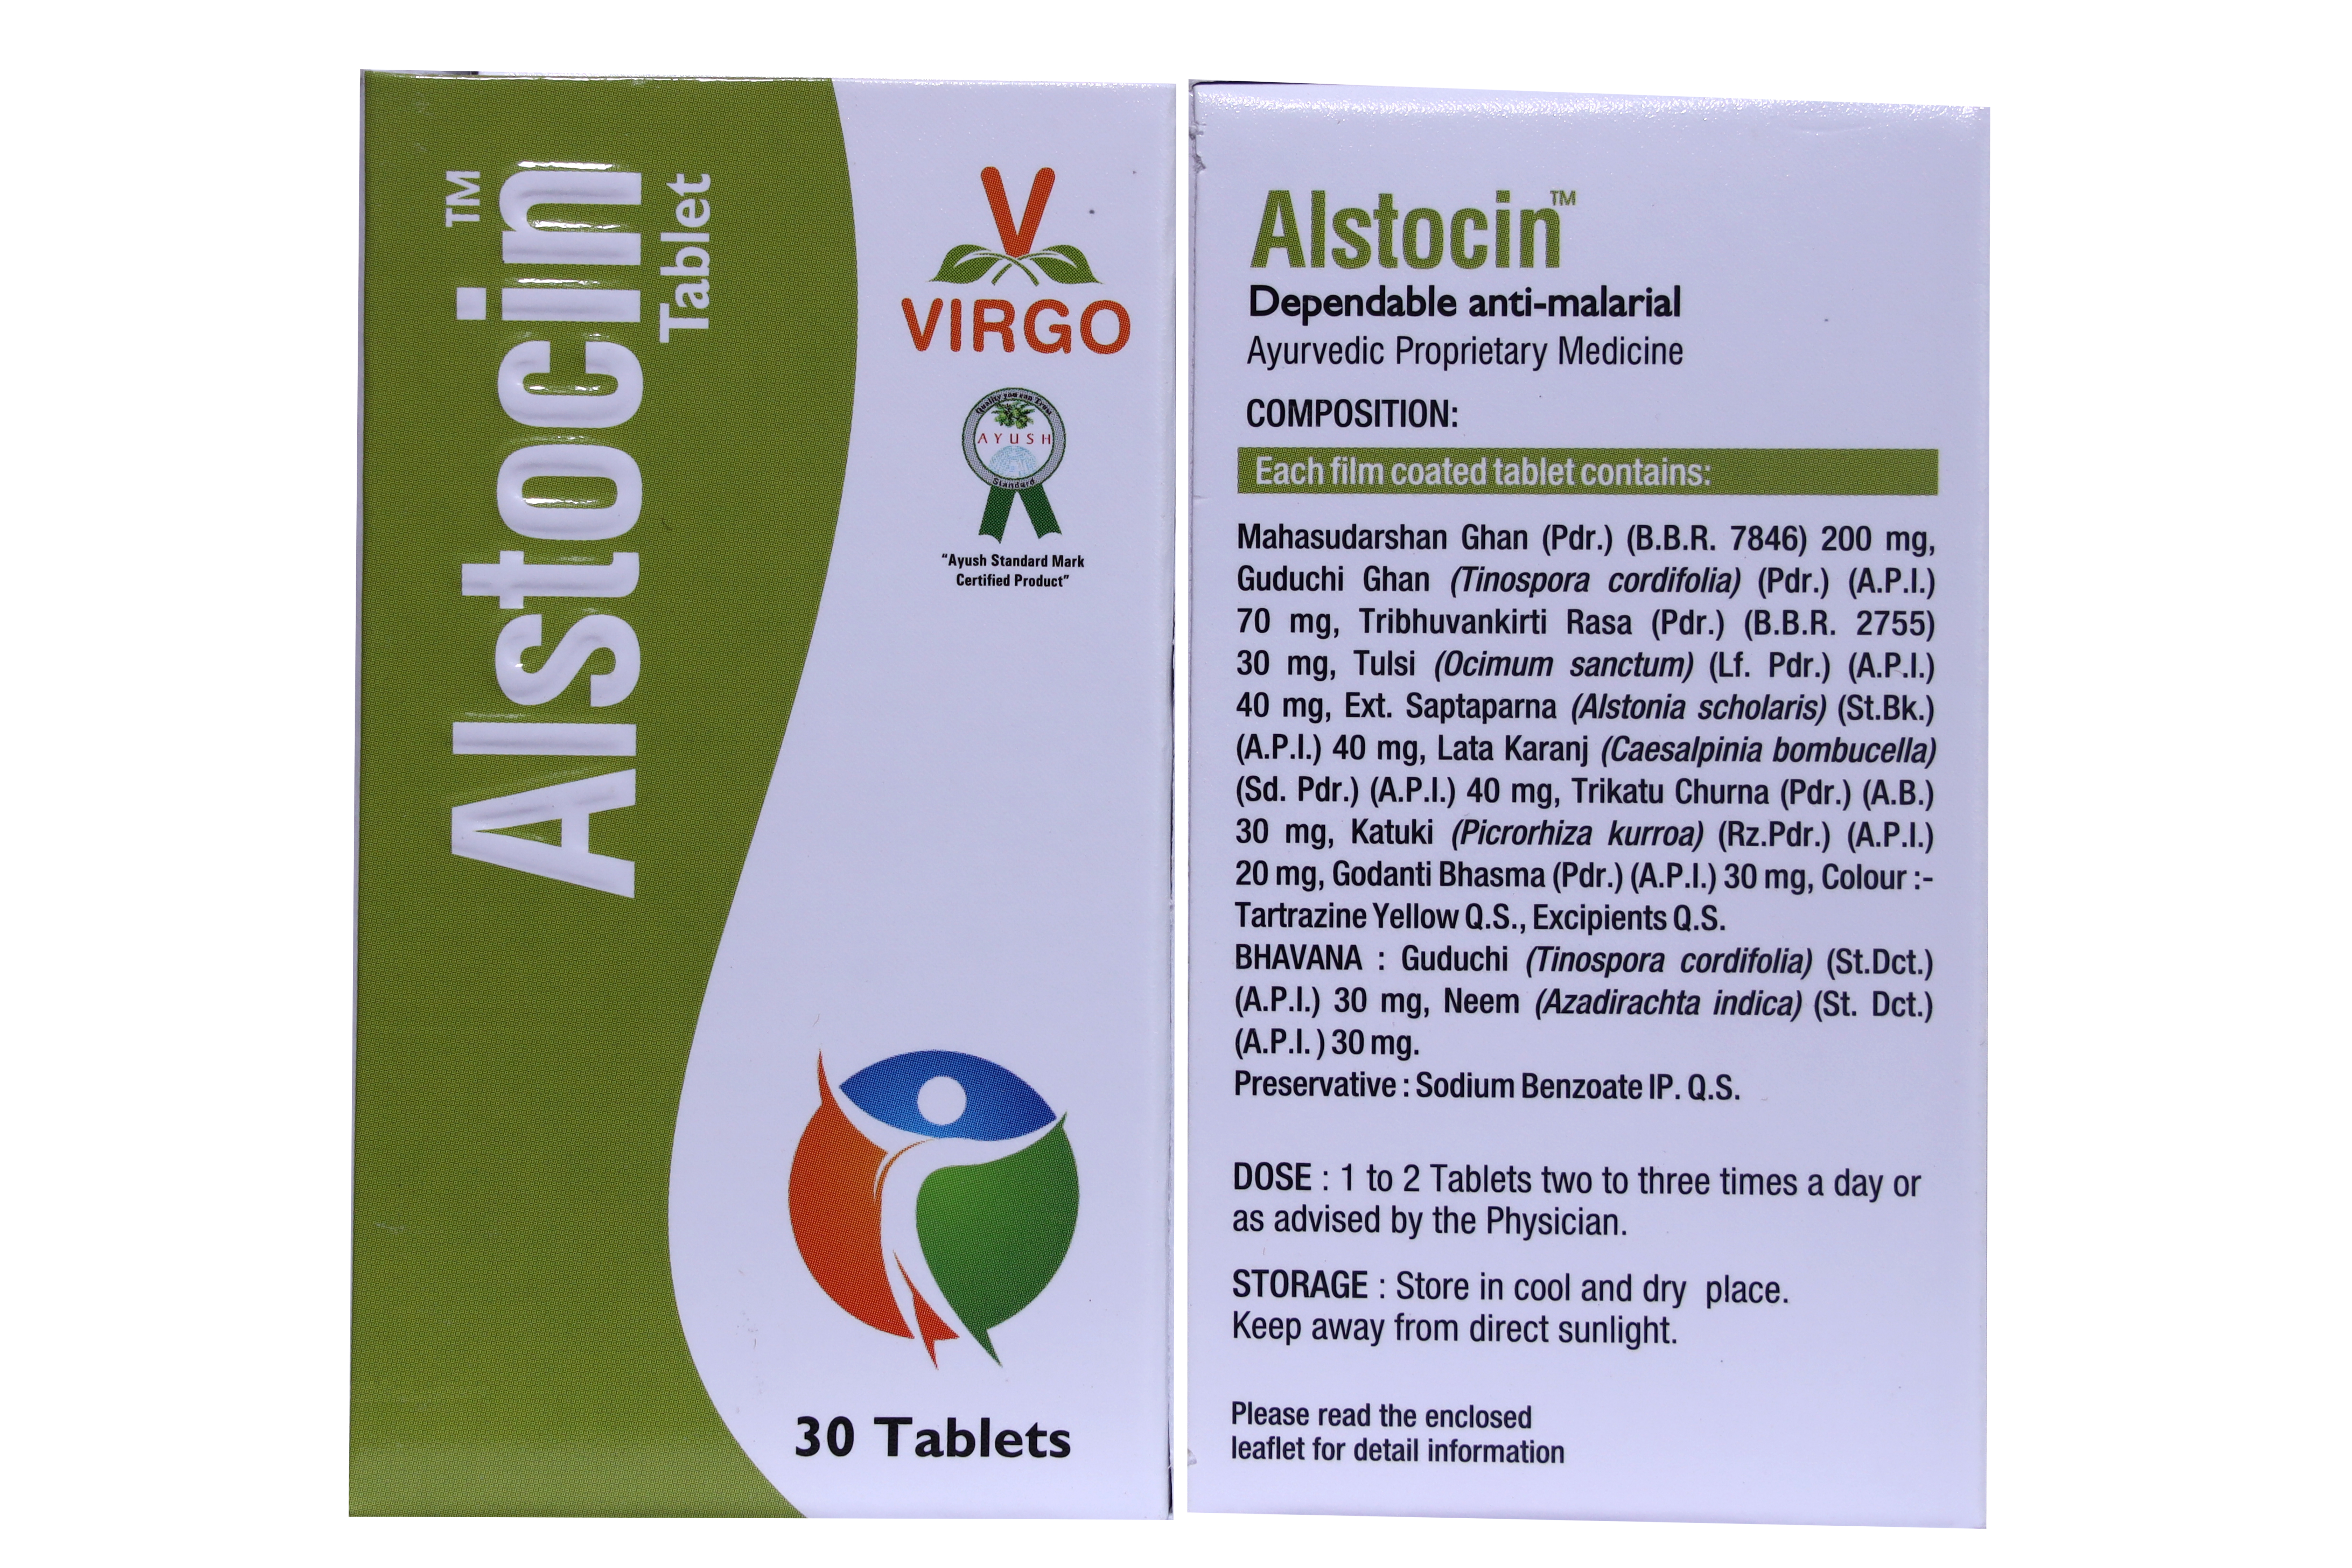 Buy Virgo Alstocin Tablet at Best Price Online